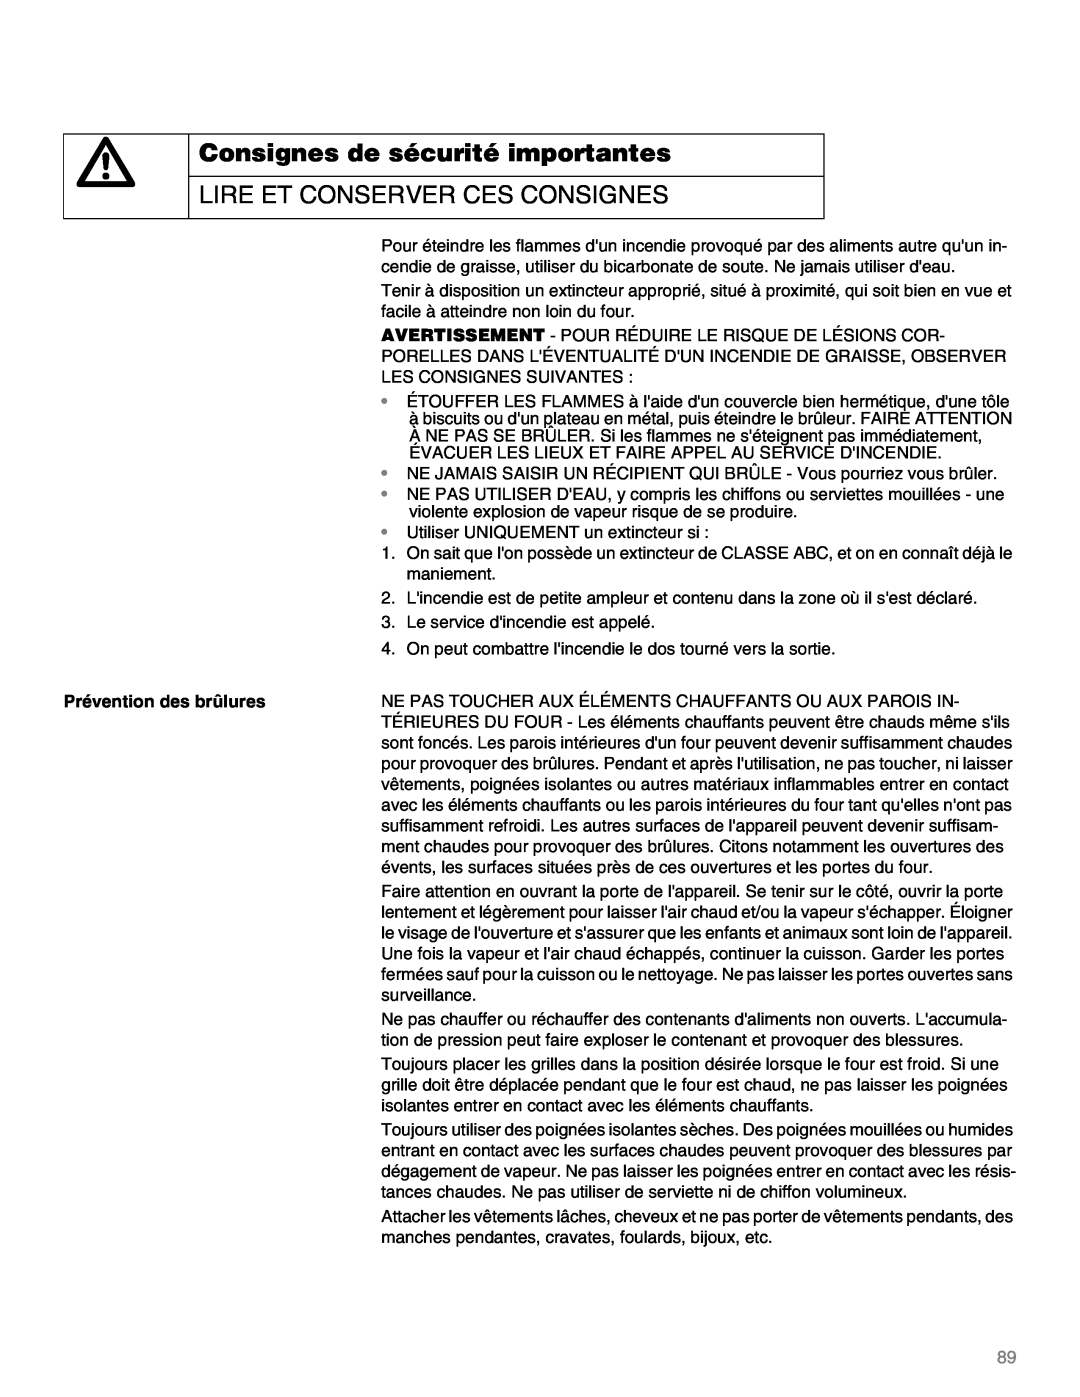 Thermador M301E, M271E manual Lire Et Conserver Ces Consignes, Prévention des brûlures 